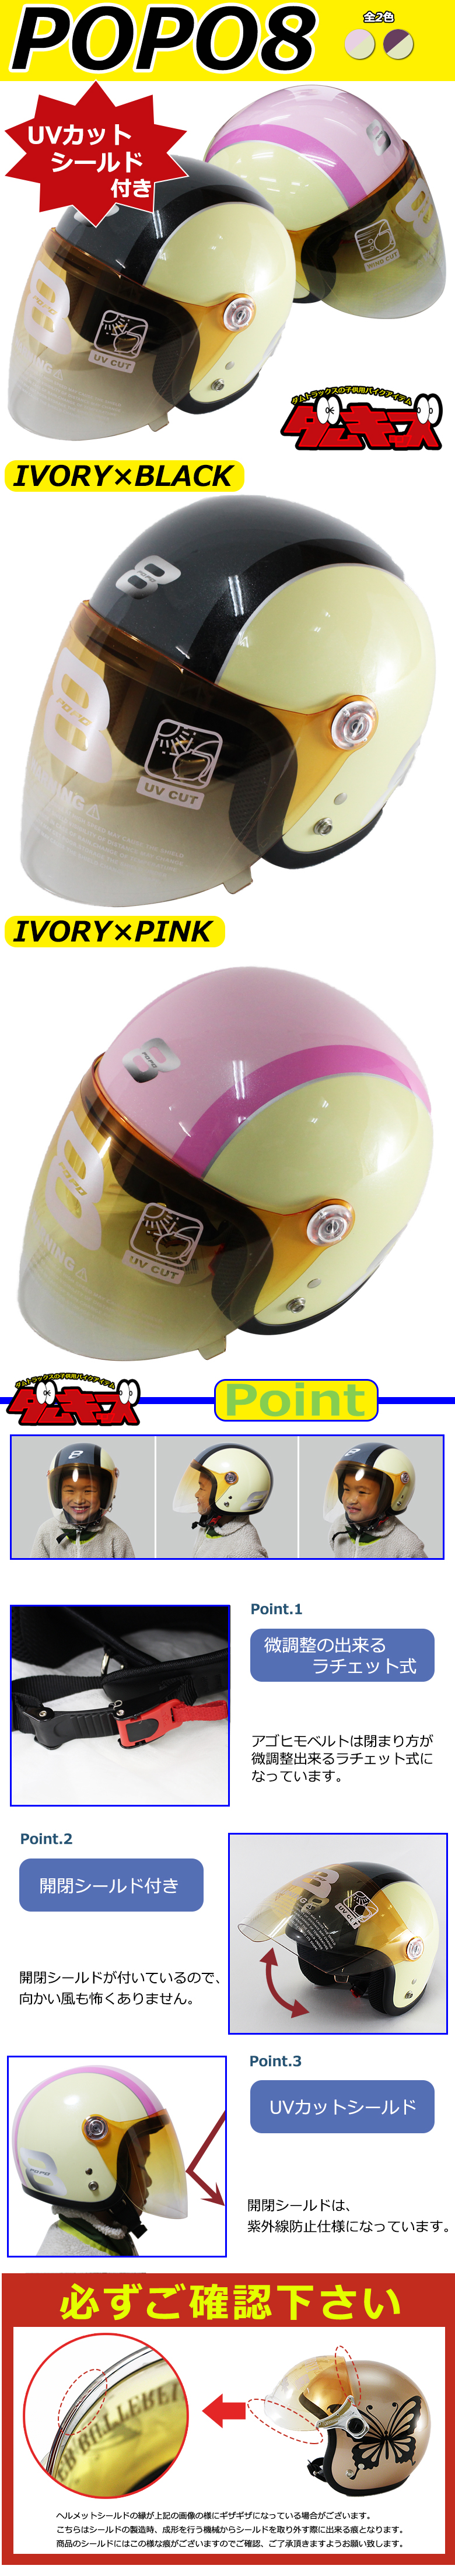 DAMMTRAX POPO8 子供用 ヘルメット (アイボリーブラック/アイボリーピンク) キッズ ポポエイト SG規格適合